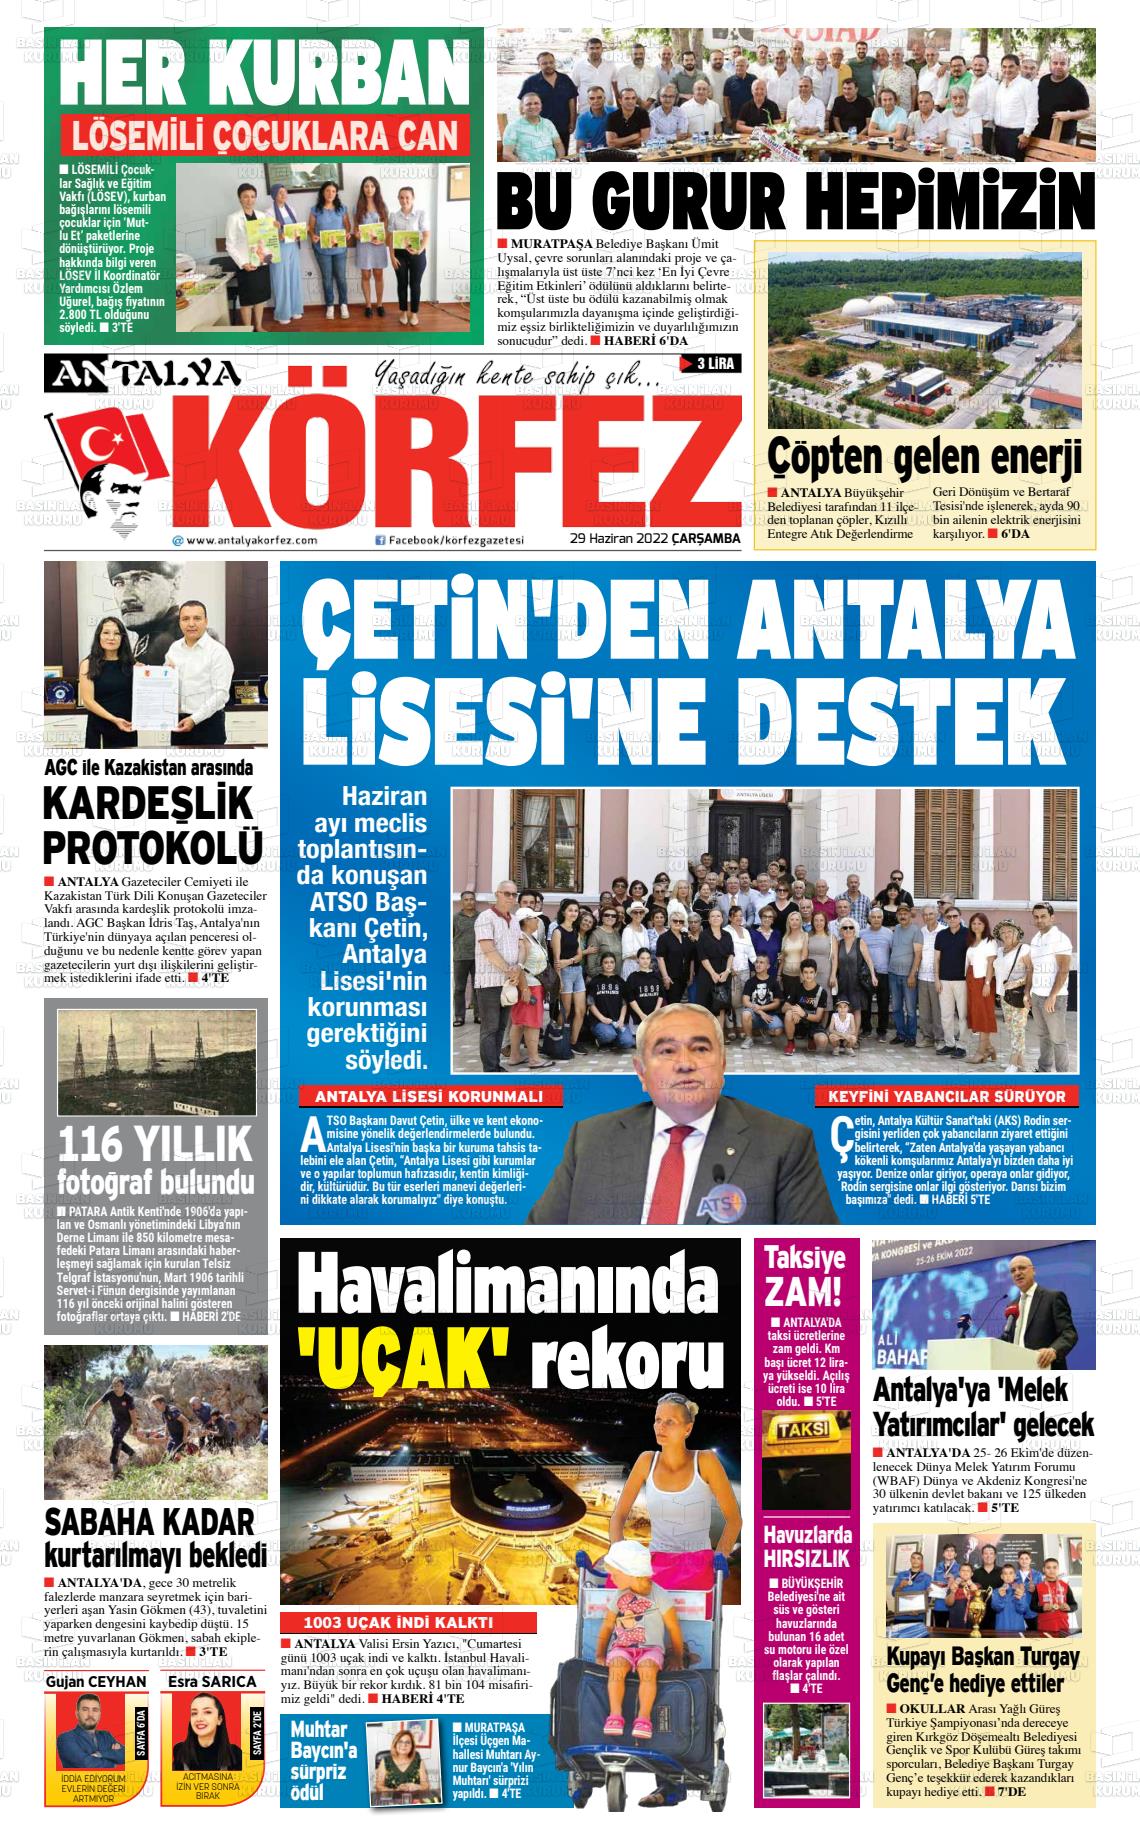 29 Haziran 2022 Antalya Körfez Gazete Manşeti